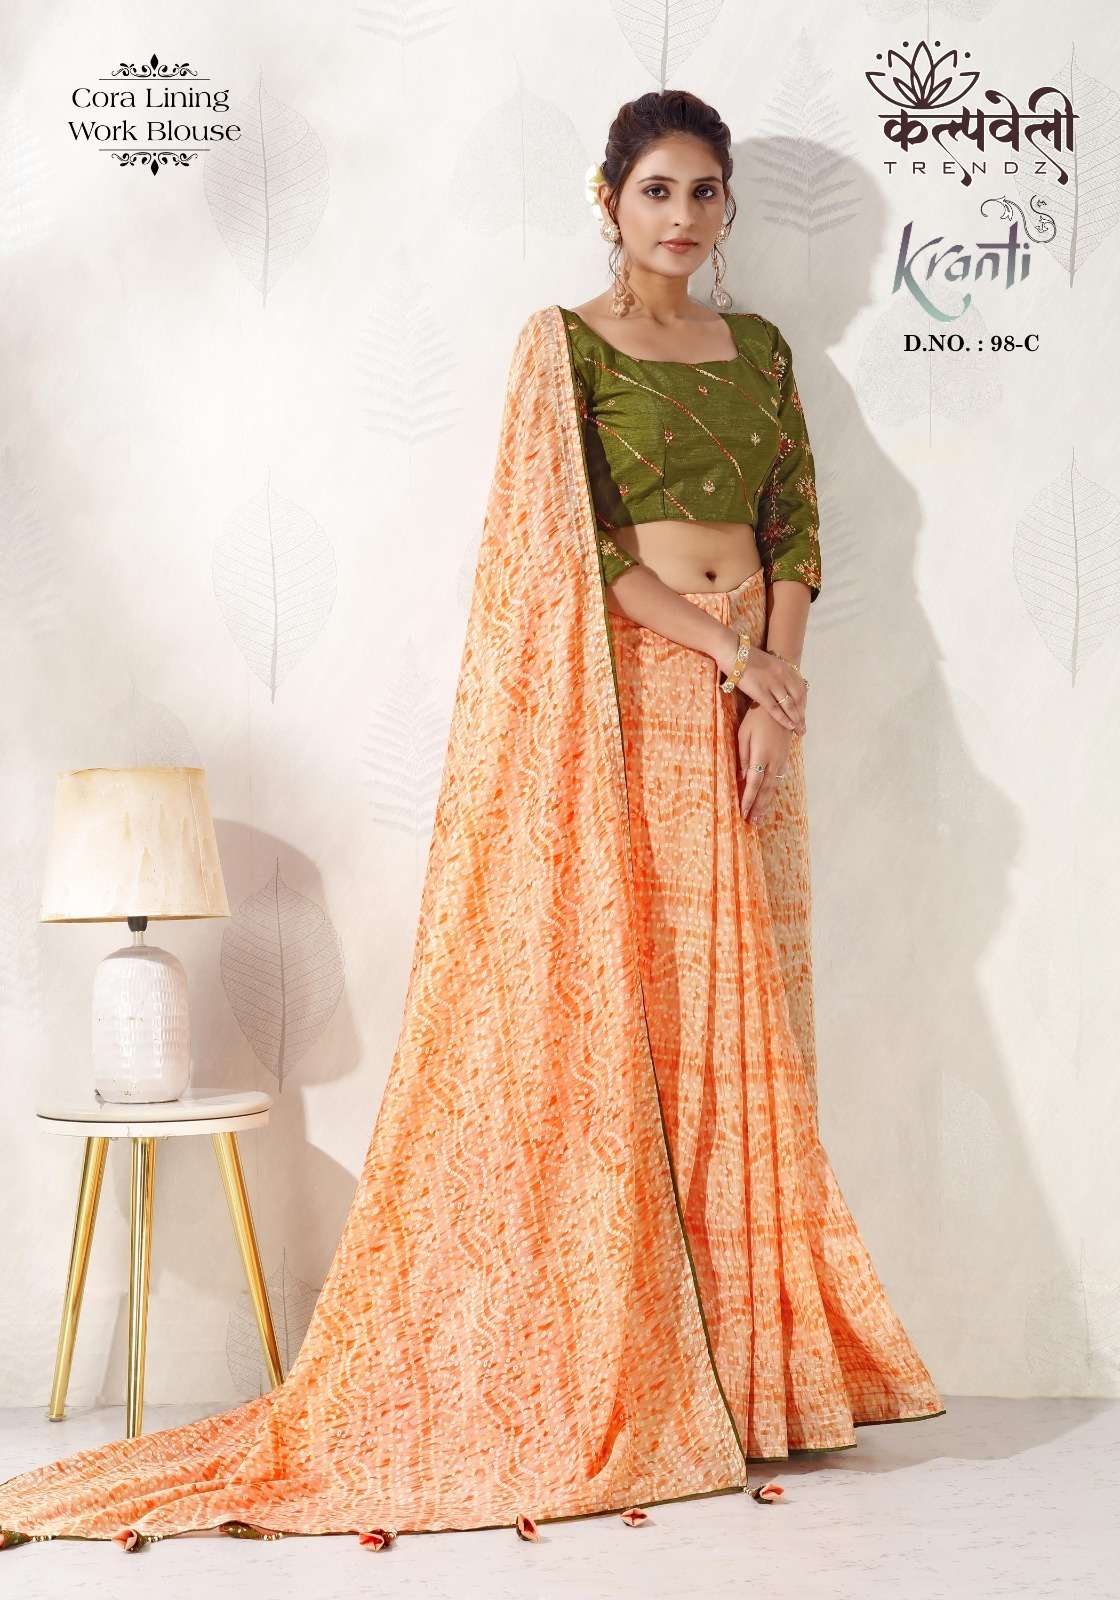 kalpavelly trendz kranti 98 fancy bandani print sarees